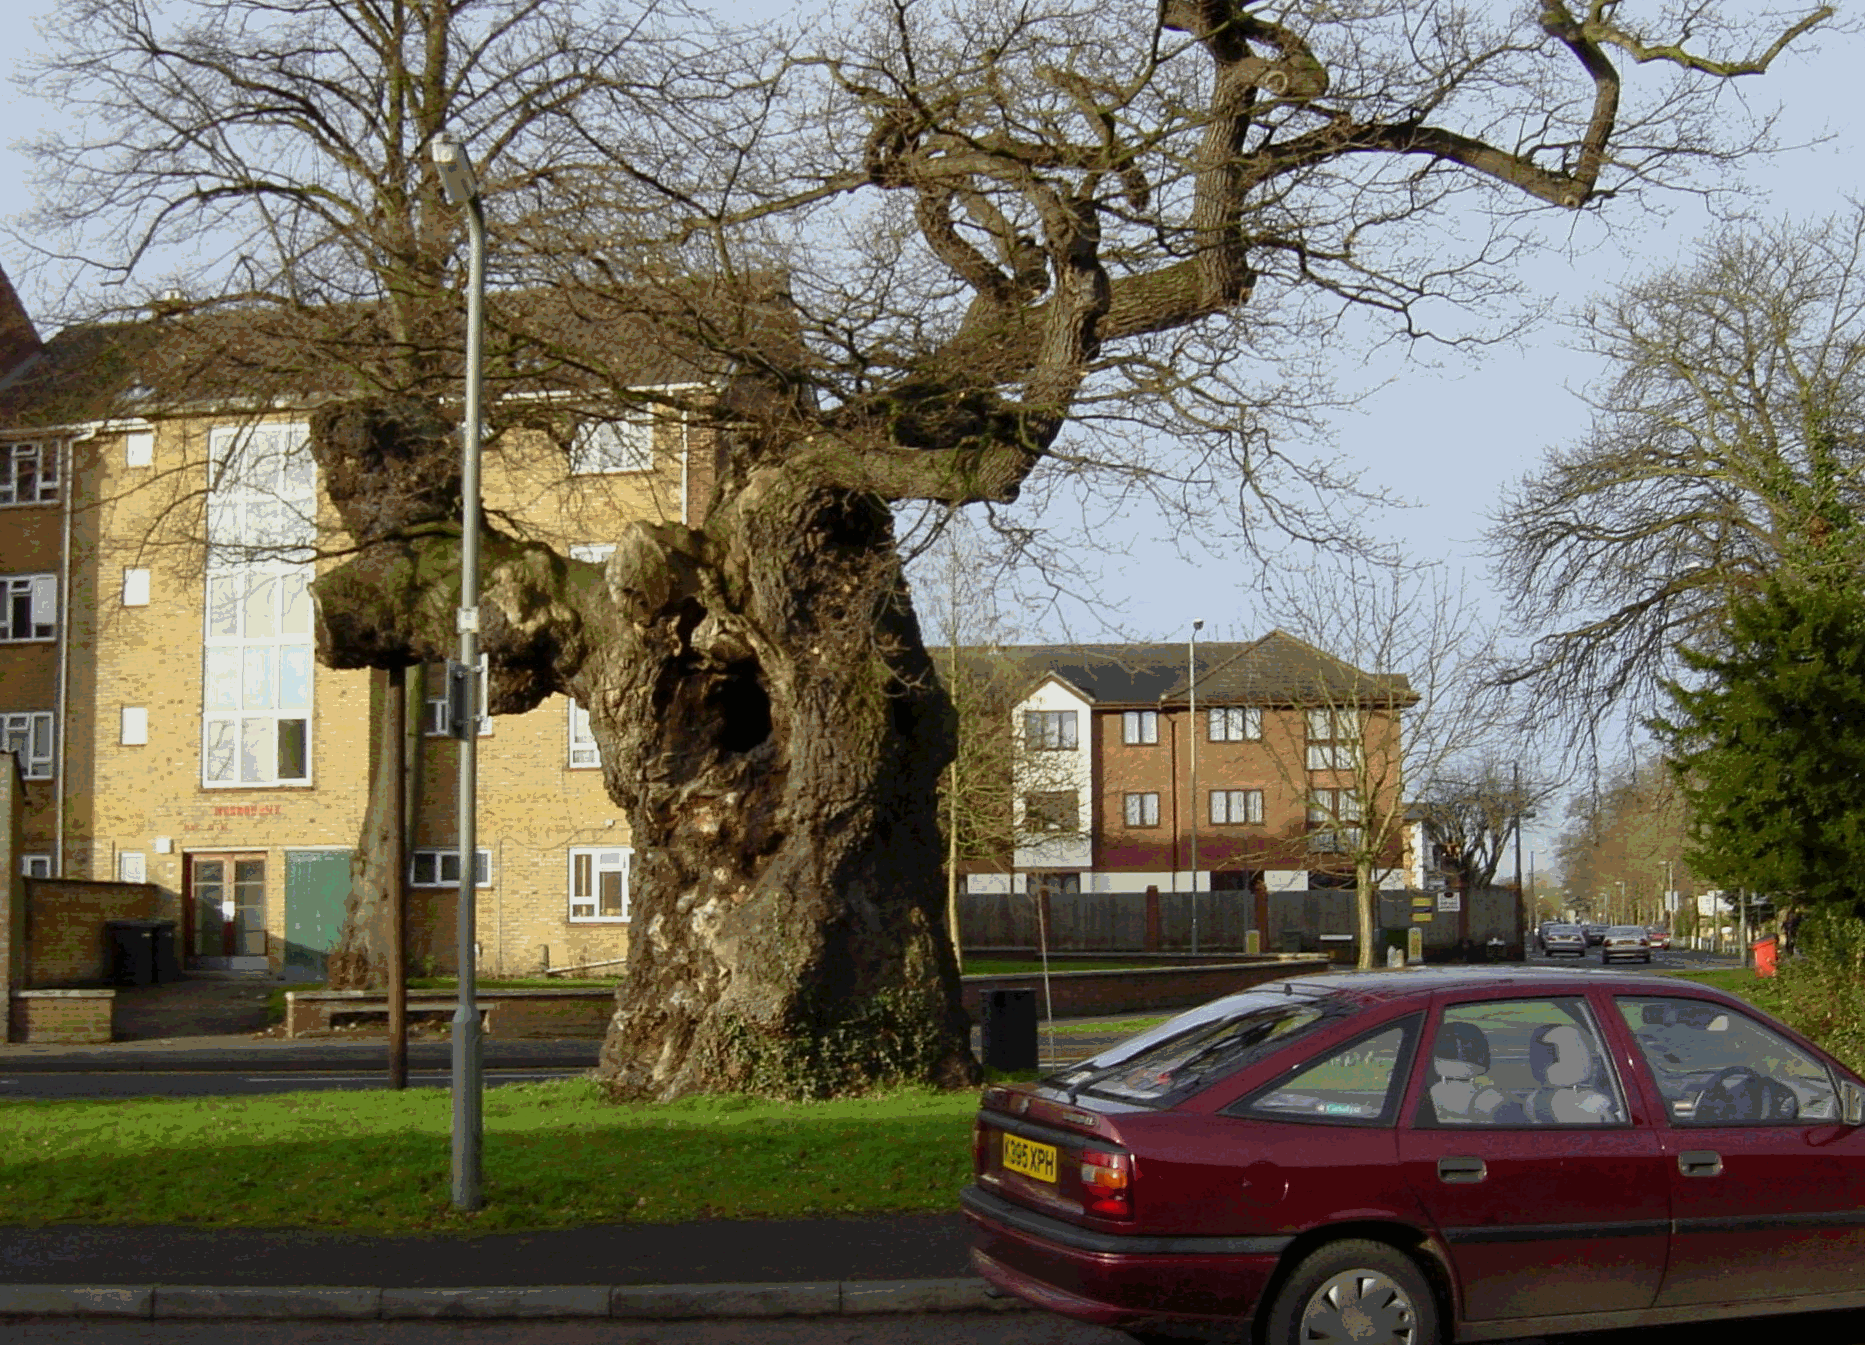 The Gospel Oak Tree